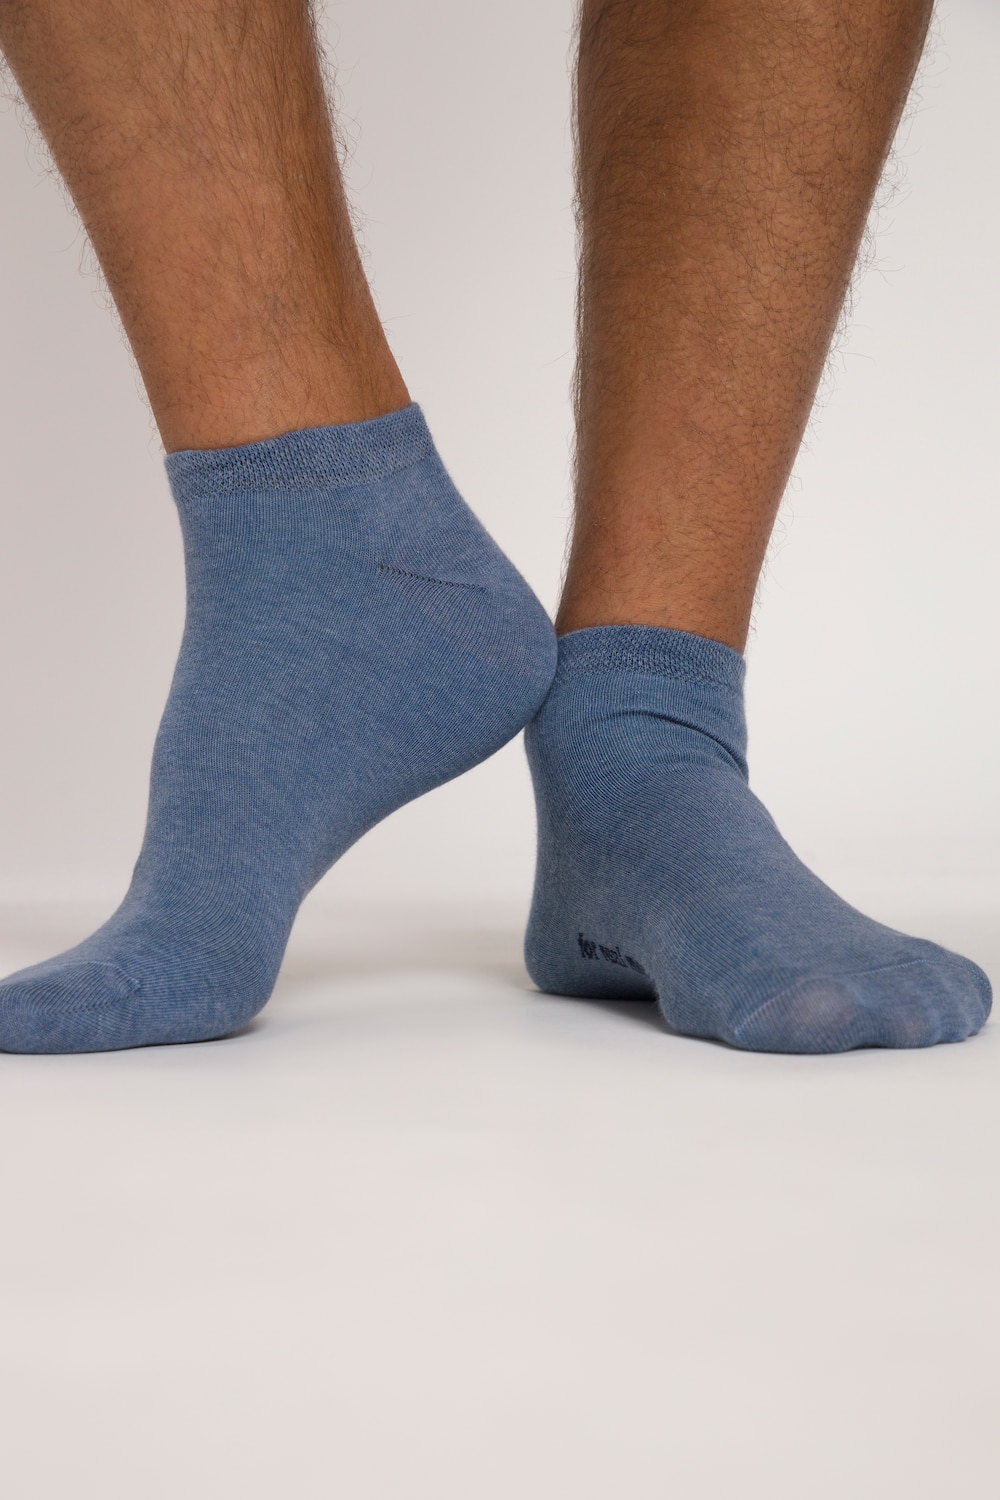 grandes tailles chaussettes pour sneakers, hommes, bleu, taille: 39-42, coton/fibres synthétiques, jp1880